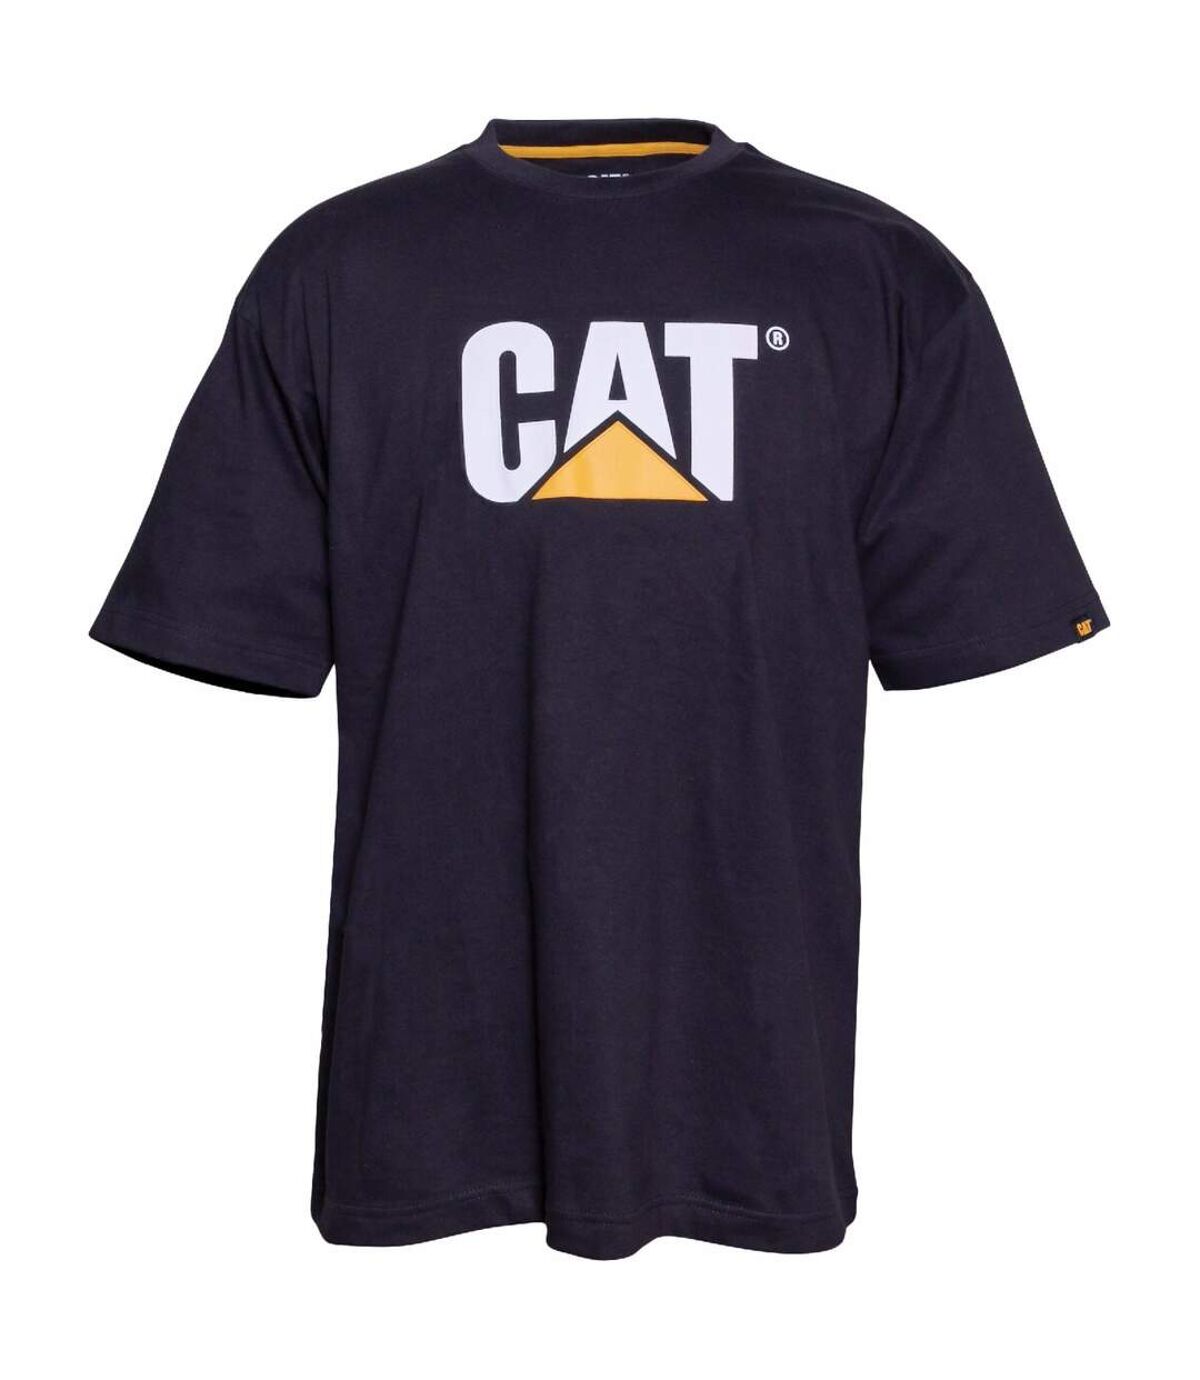 Caterpillar - T-shirt manches courtes - Homme (Noir) - UTFS4251